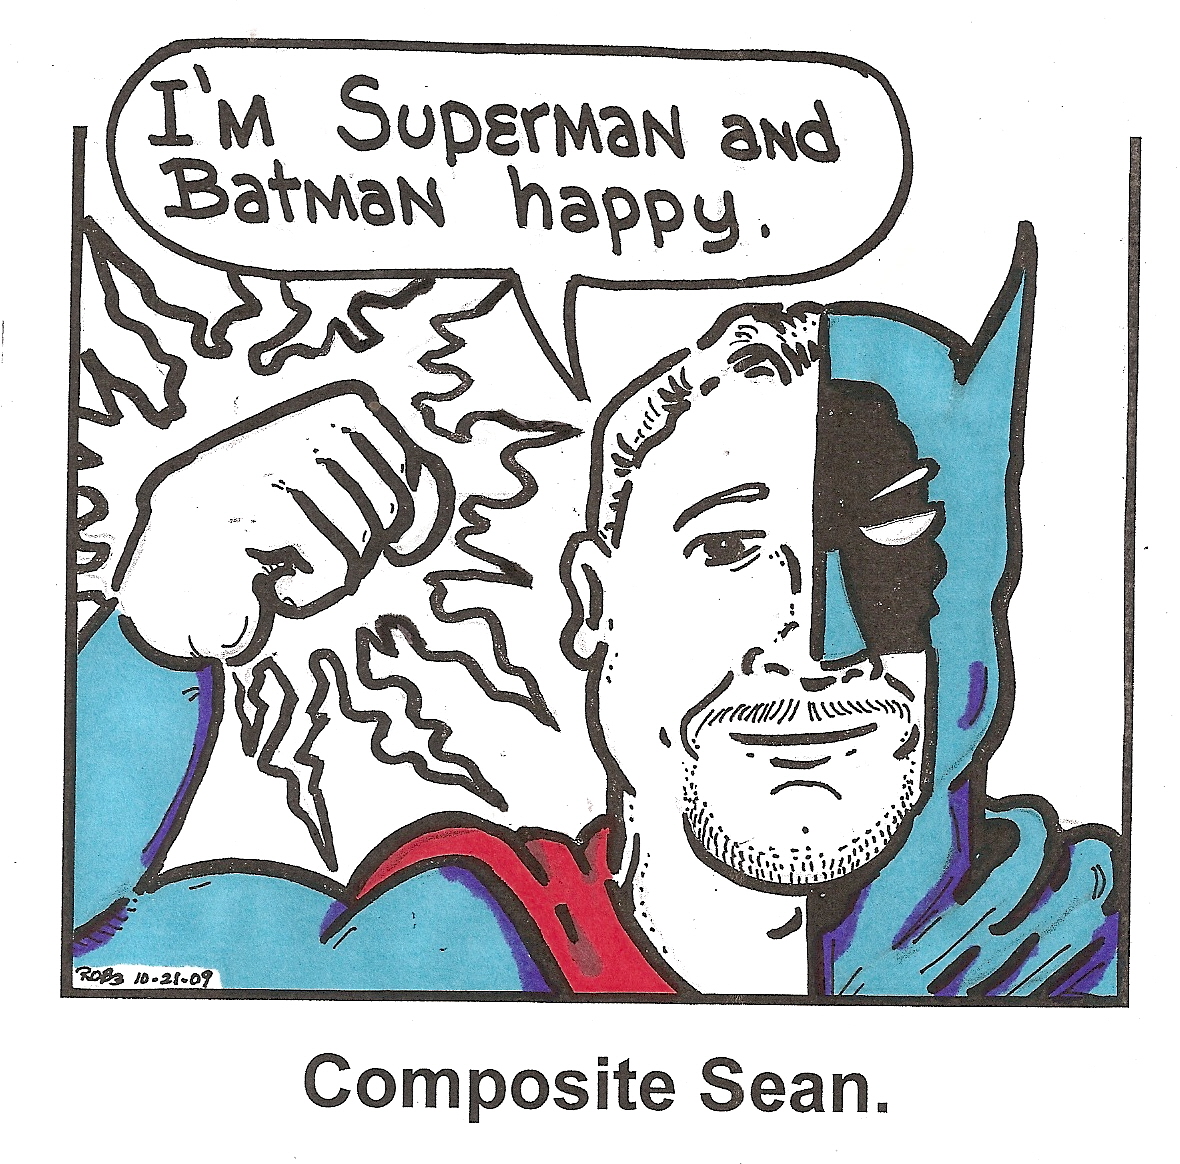 Composite Sean